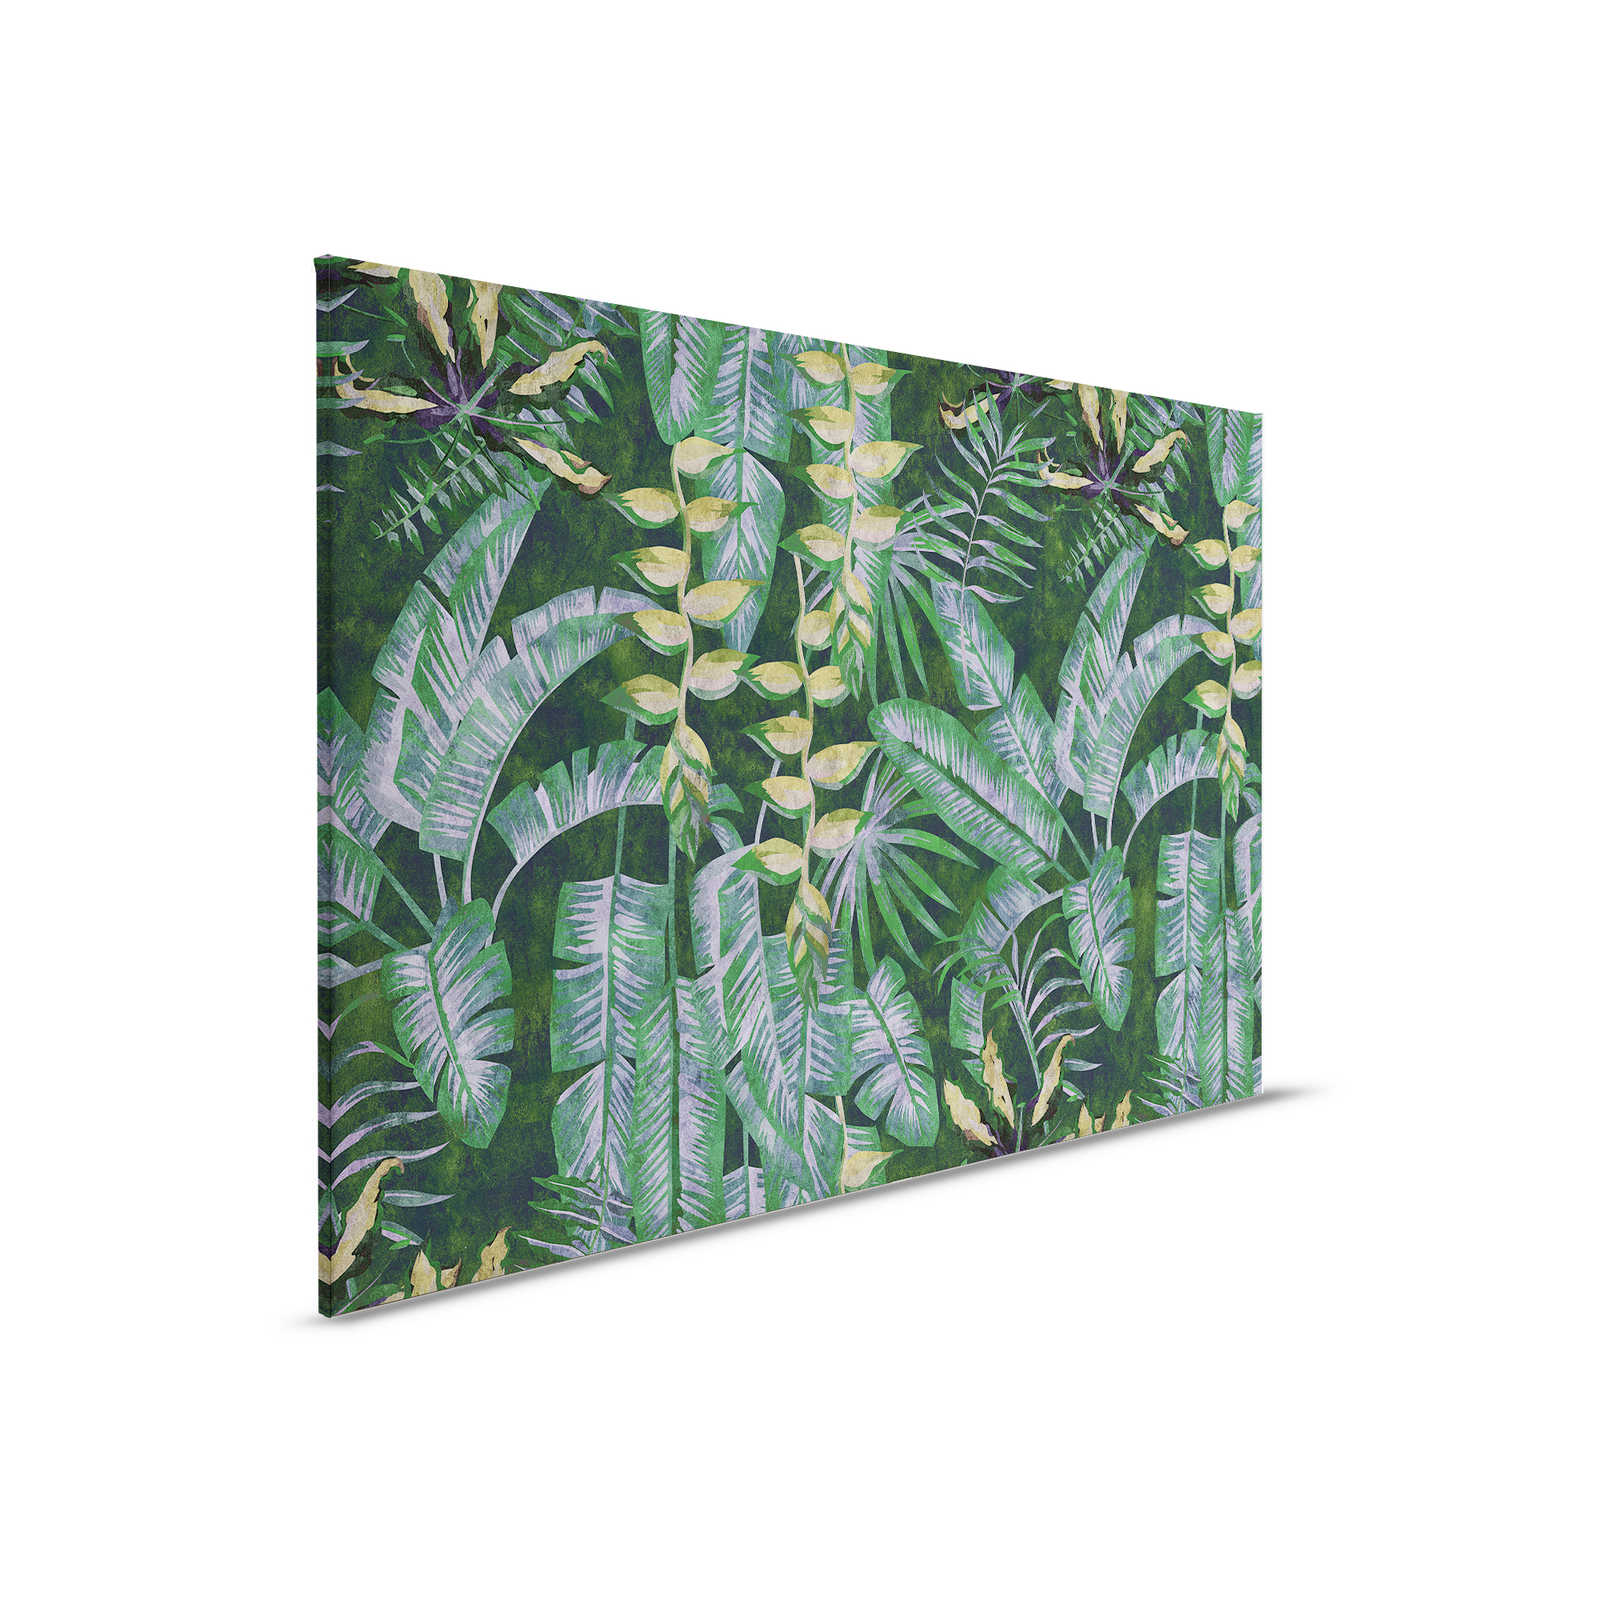 Tropicana 2 - Leinwandbild mit tropische Pflanzen – 0,90 m x 0,60 m
